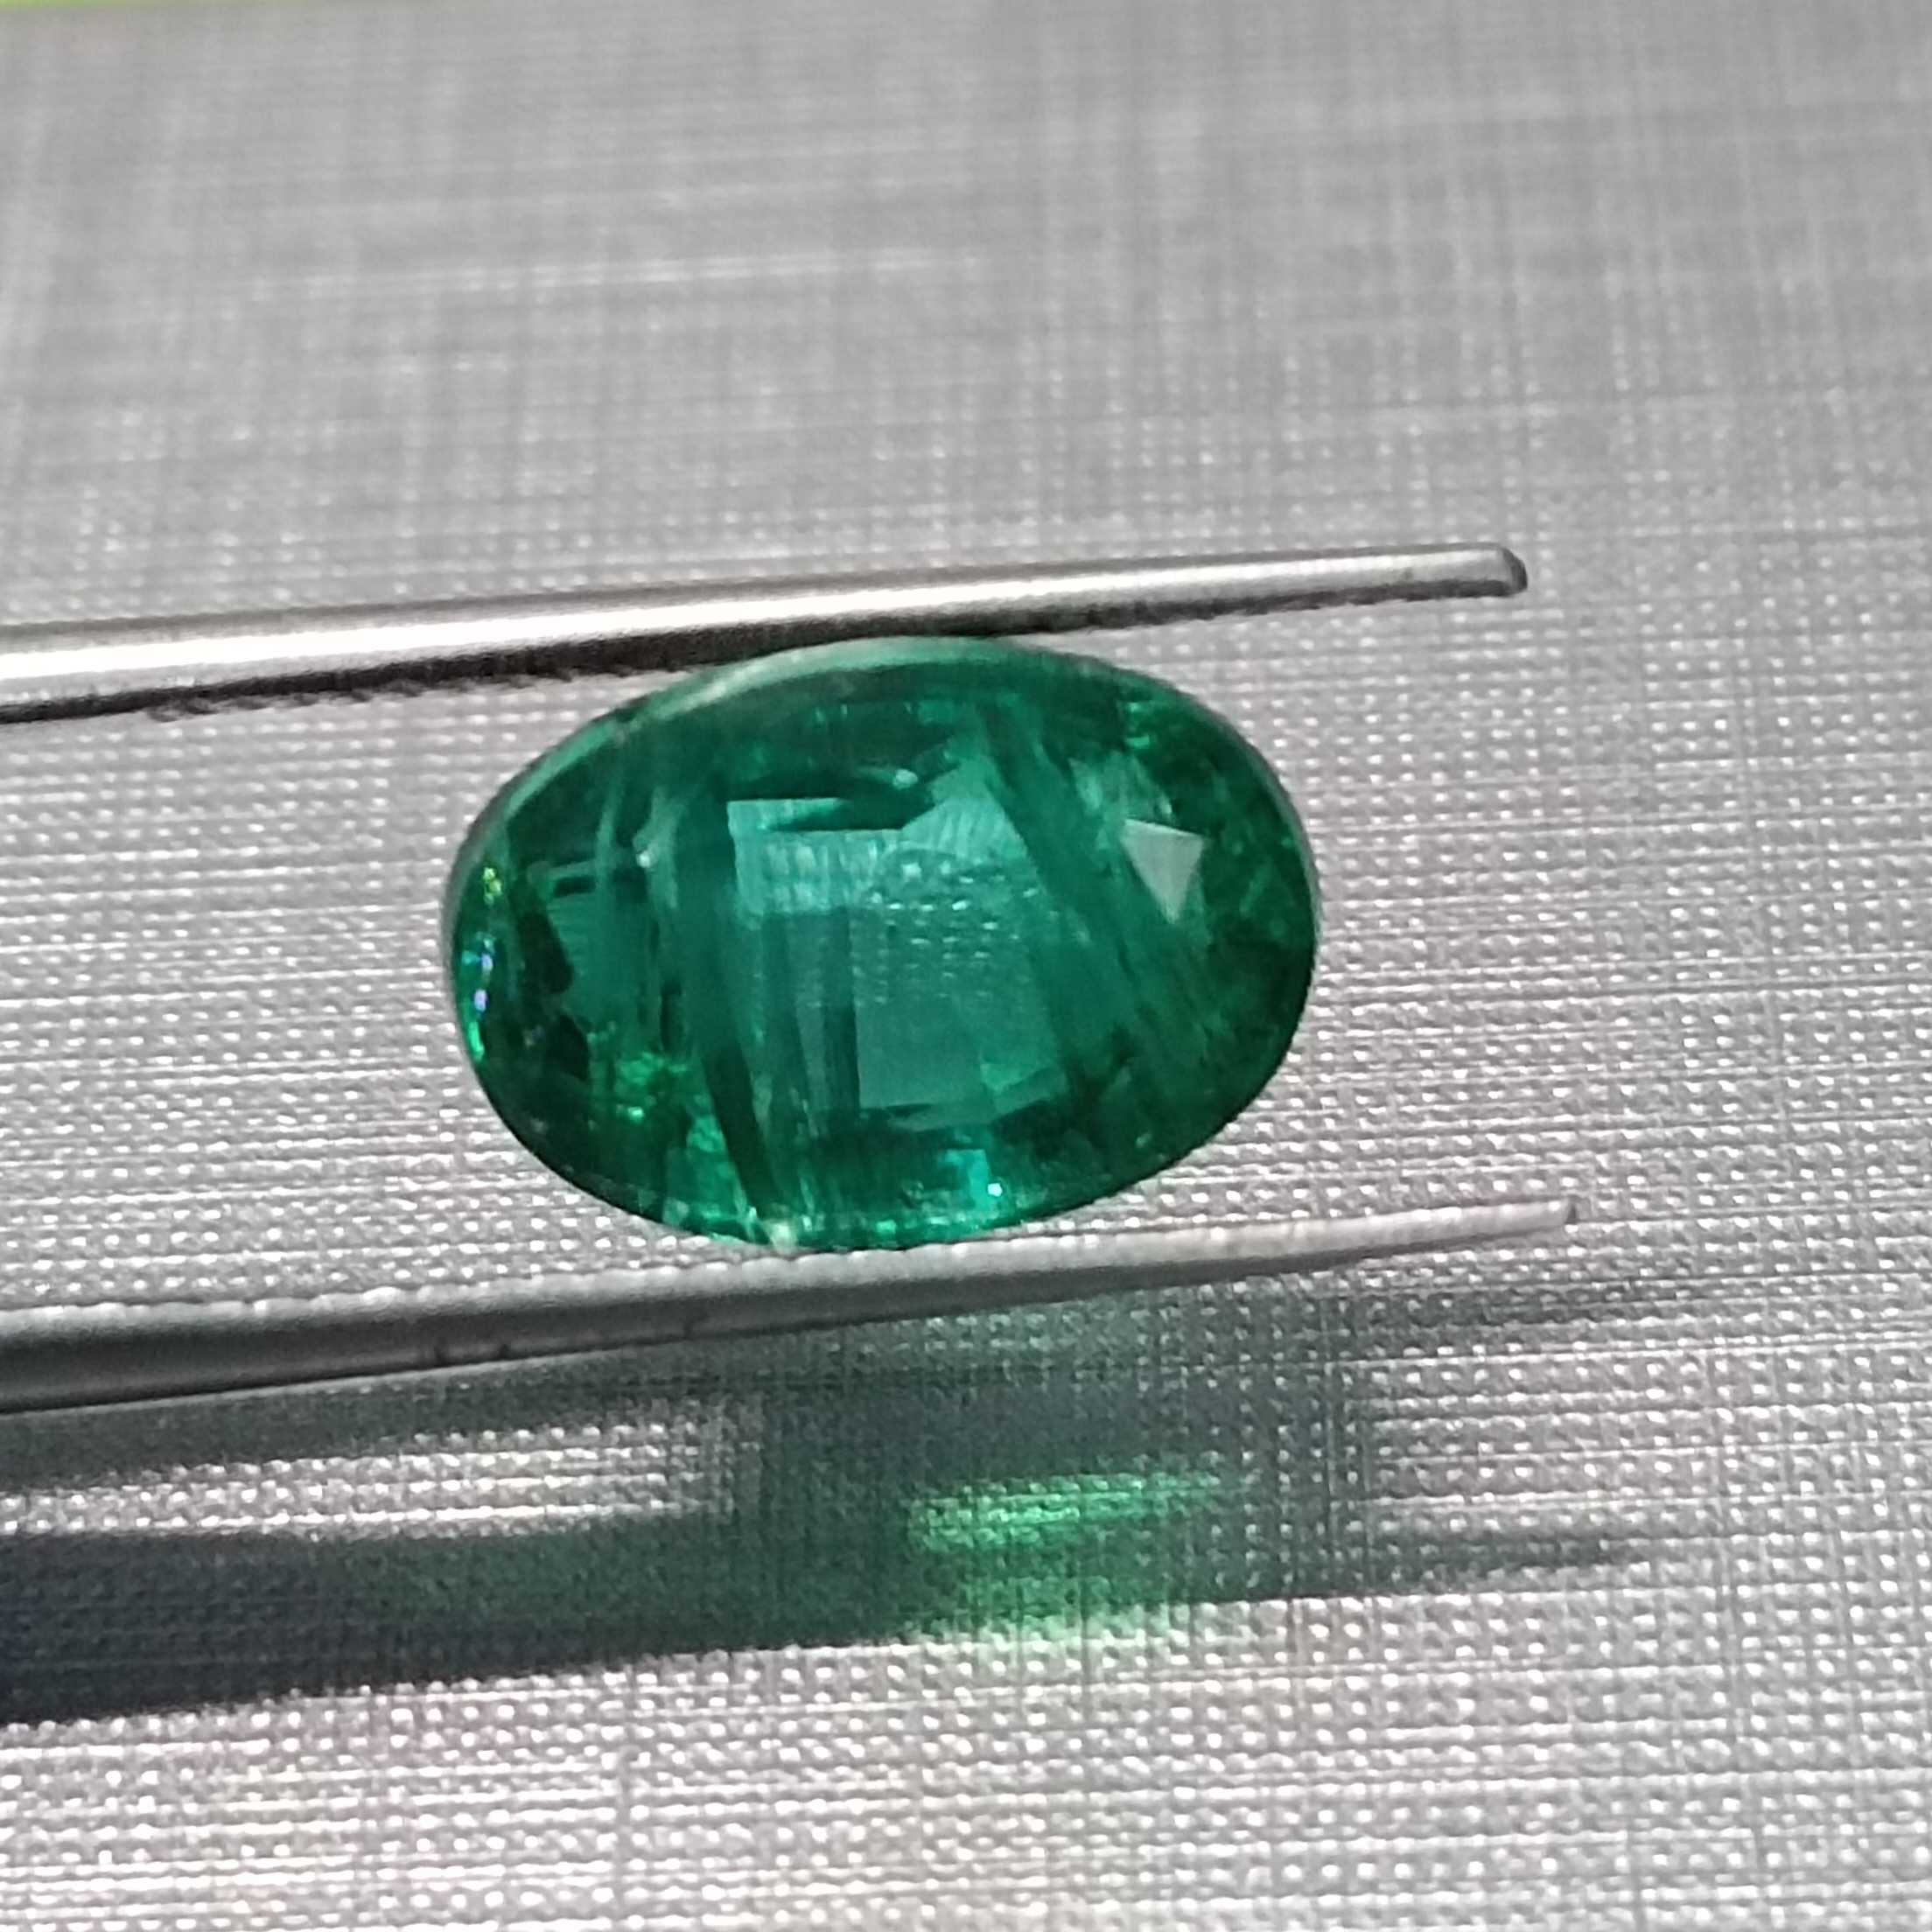 3.03ct Oval Cut Deep Vivid Green Color Emerald